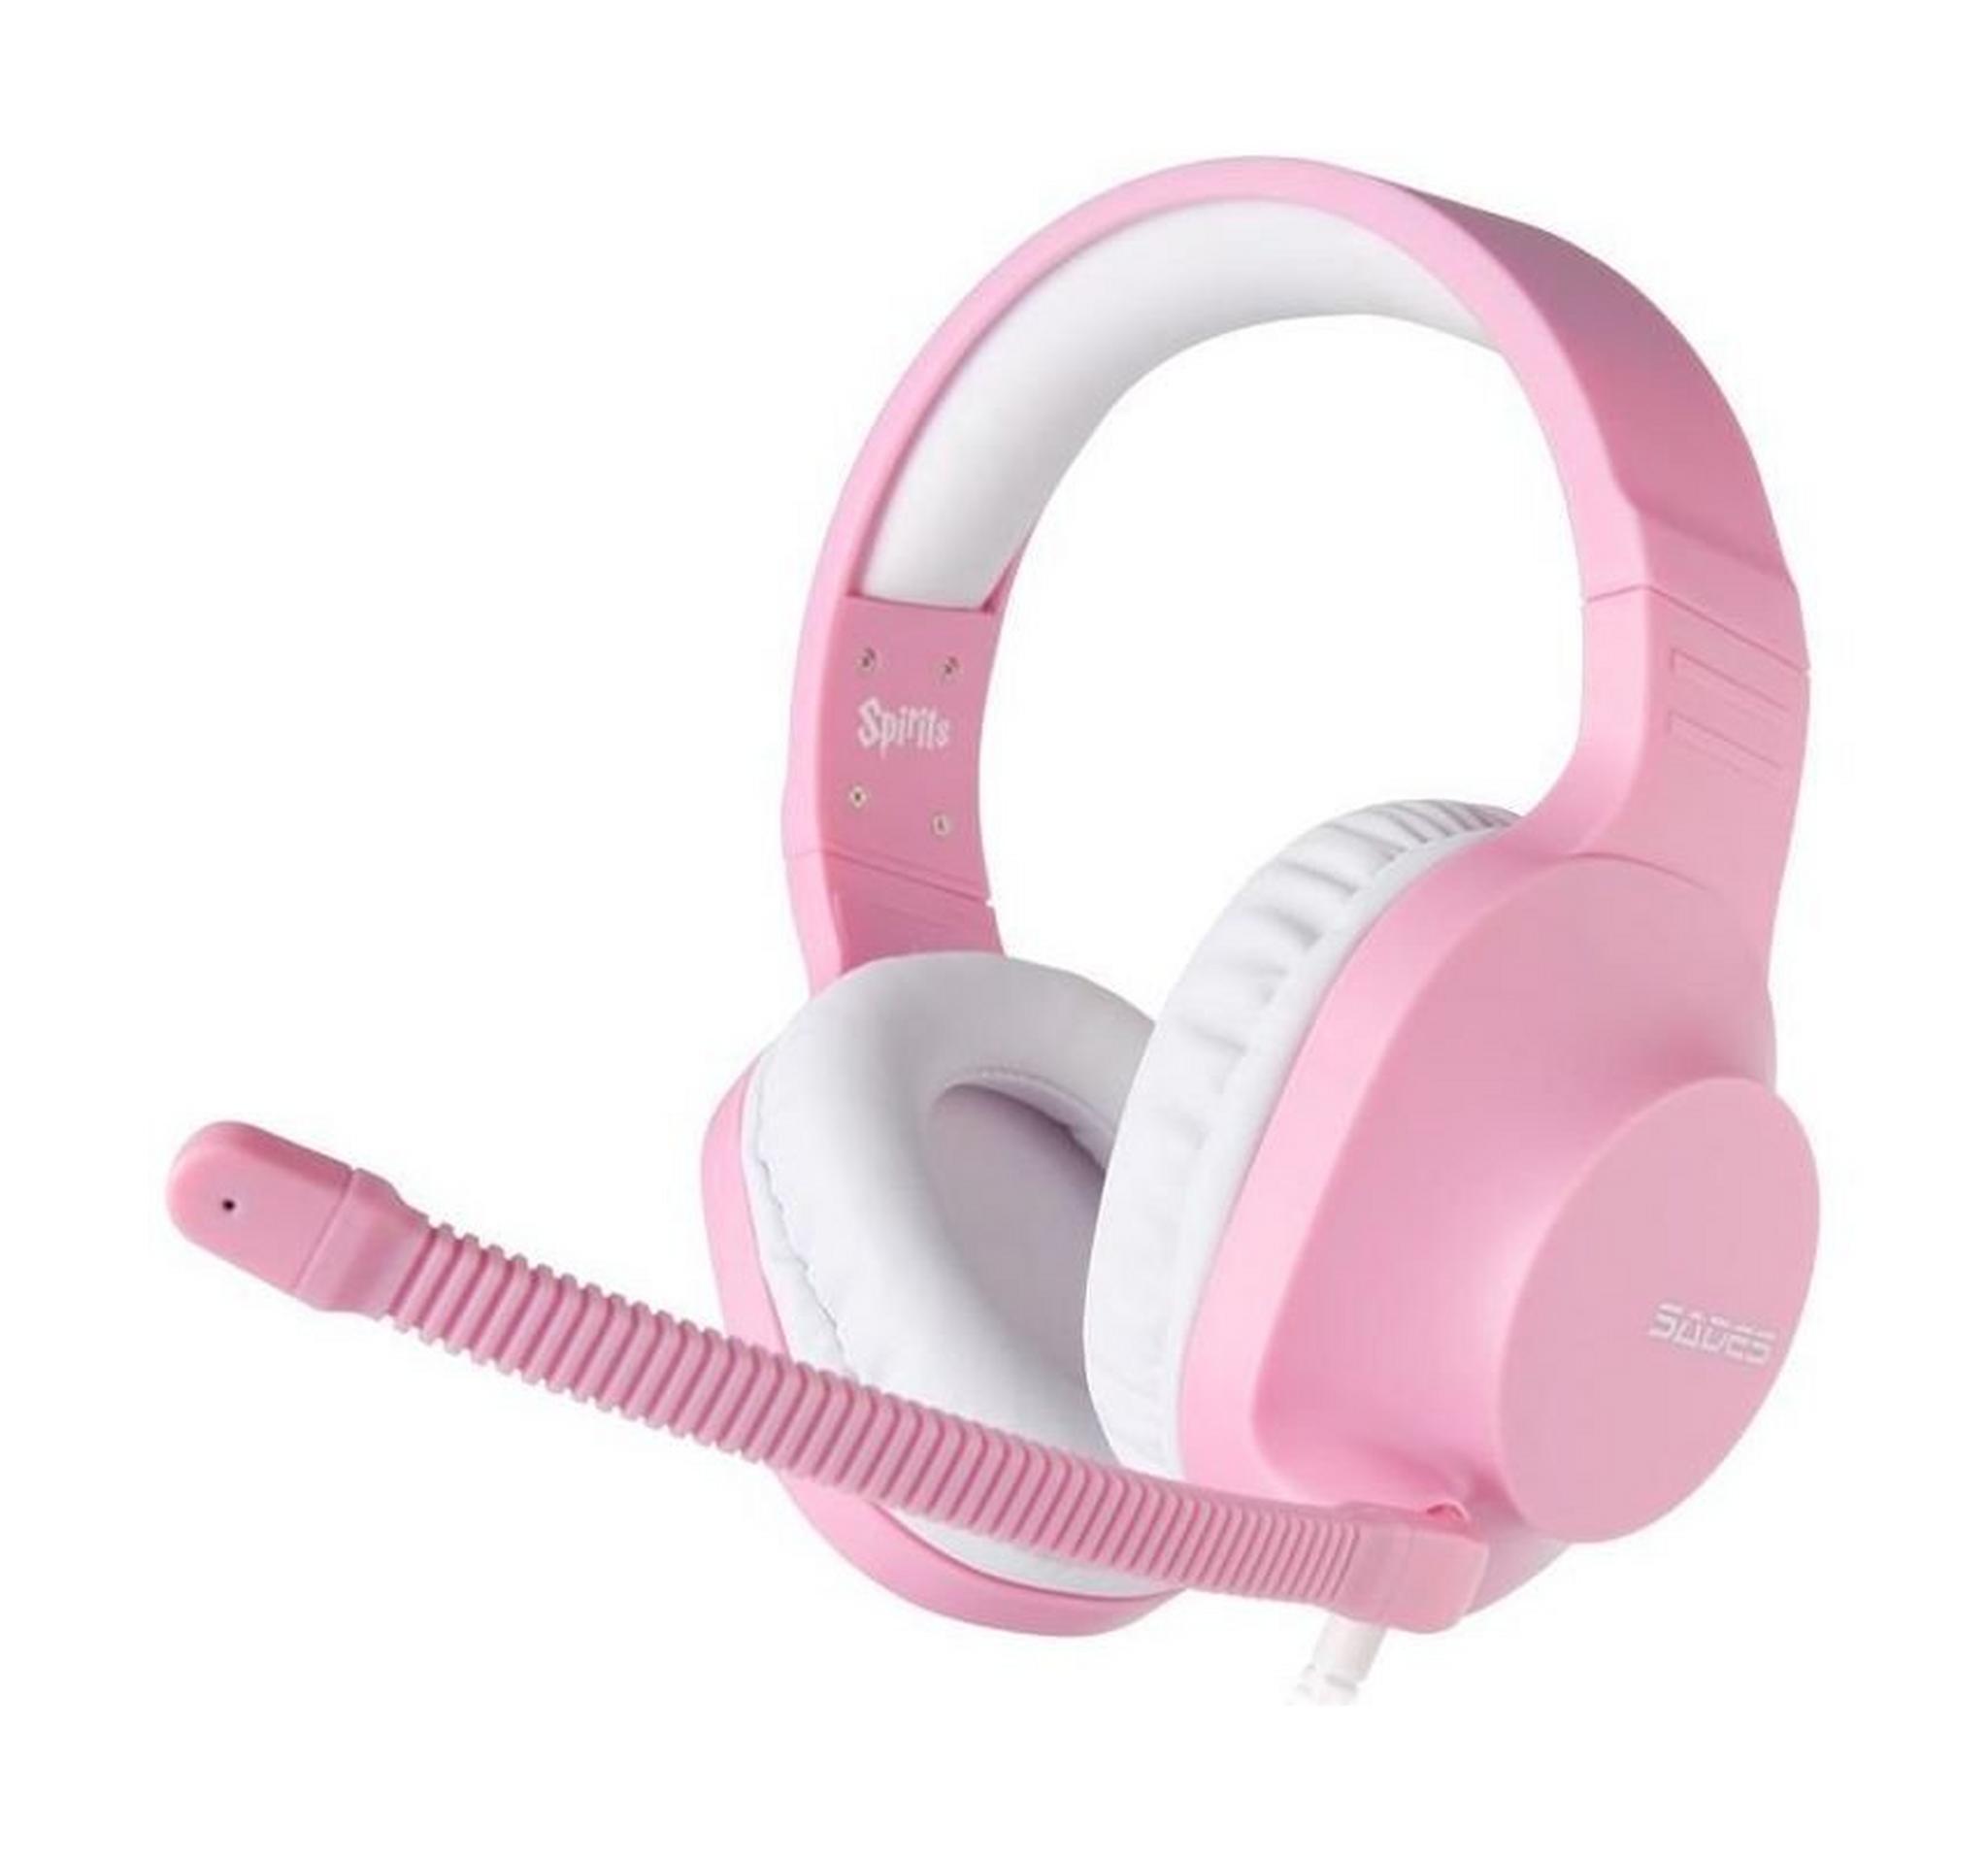 Sades Spirits Wired Gaming Headset - Pink